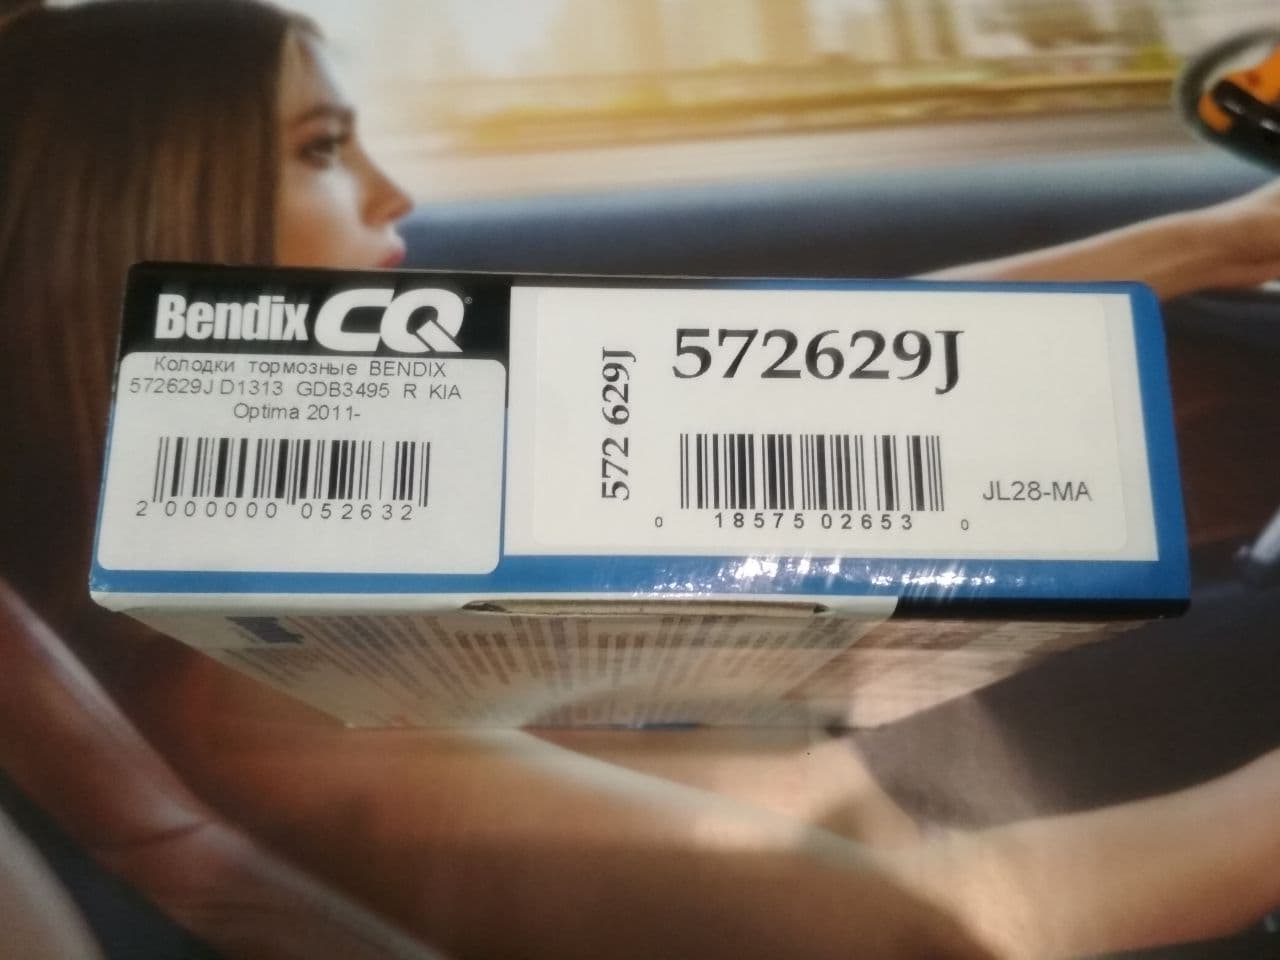     Bendix CQ